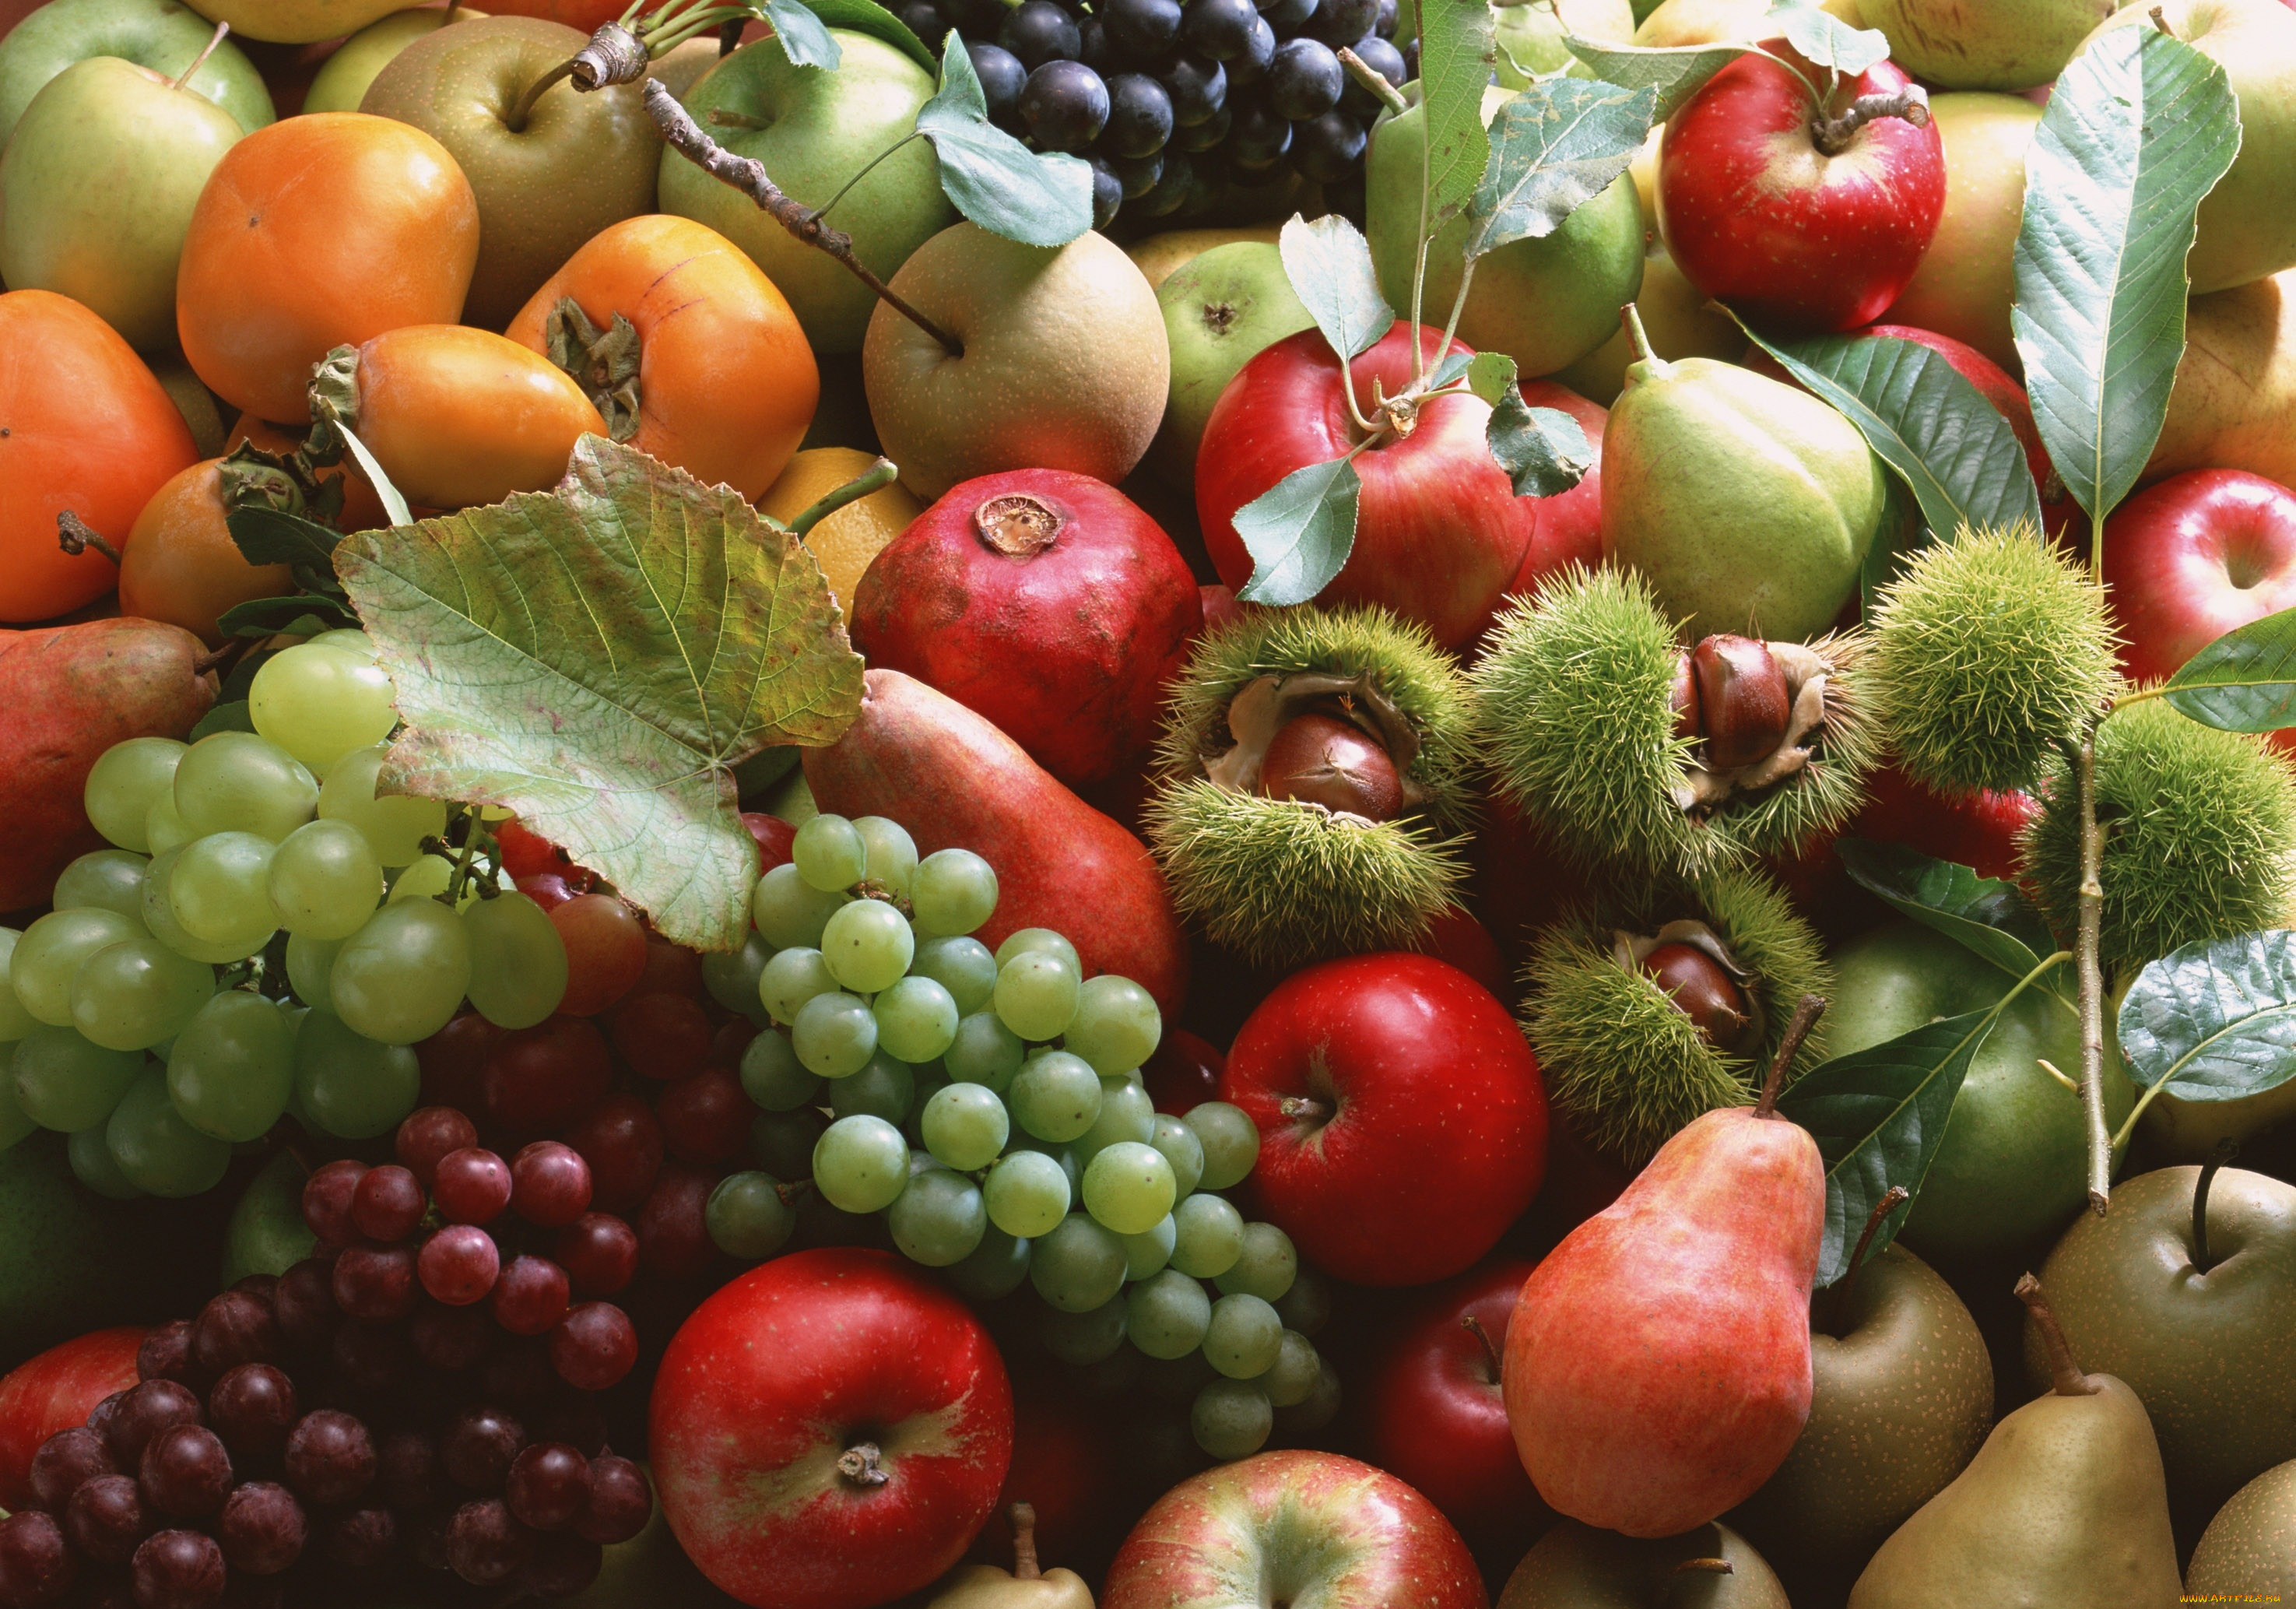 Плоды овощей и фруктов. Овощи, фрукты, ягоды. Осенние плоды. Фрукты и ягоды. Плоды и овощи.